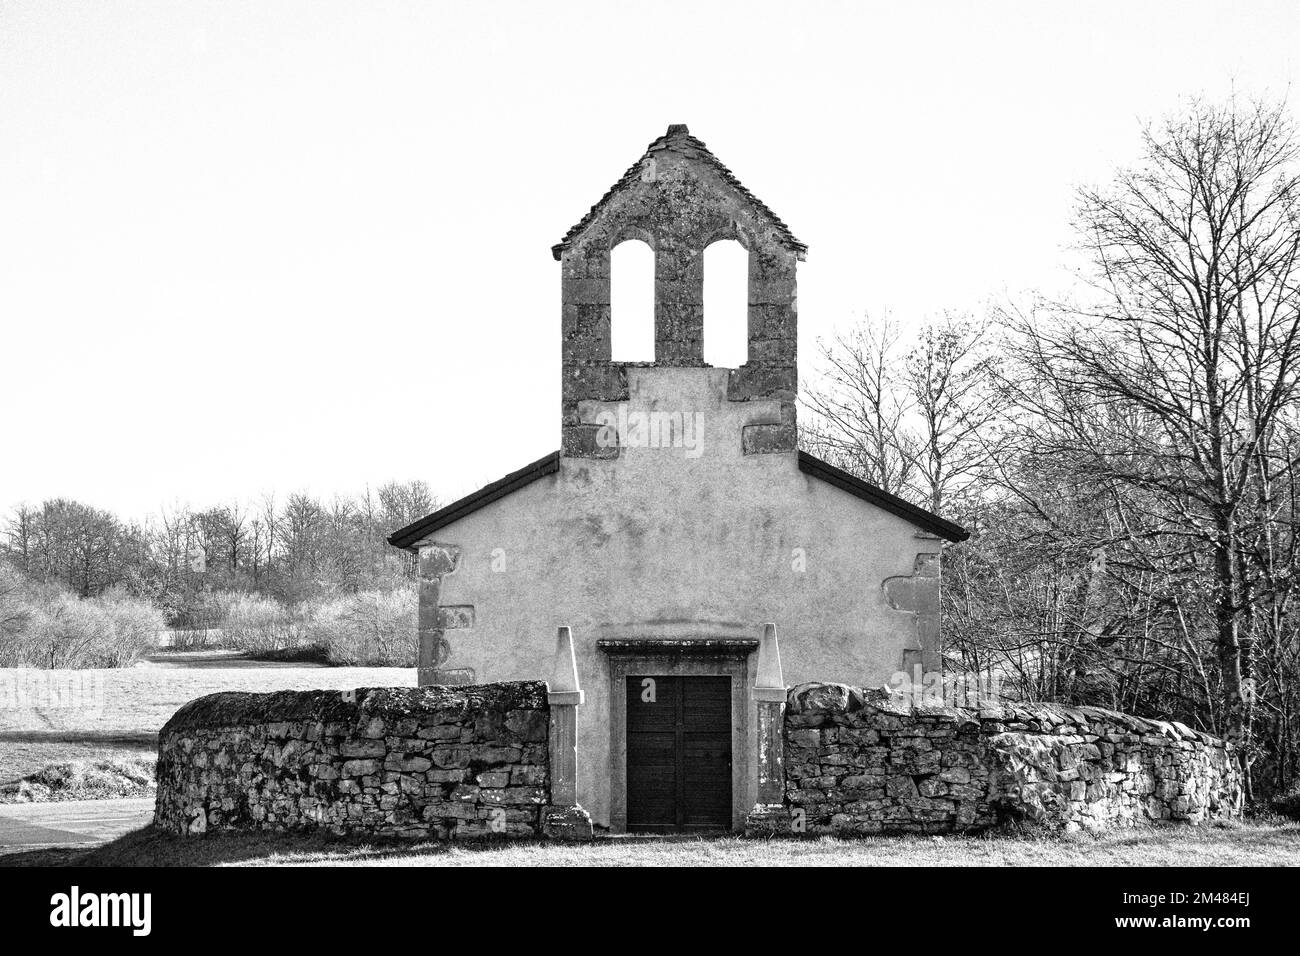 Foto monocromatica in bianco e nero di una vecchia chiesa medievale in pietra a Kras, Slovenia Foto Stock